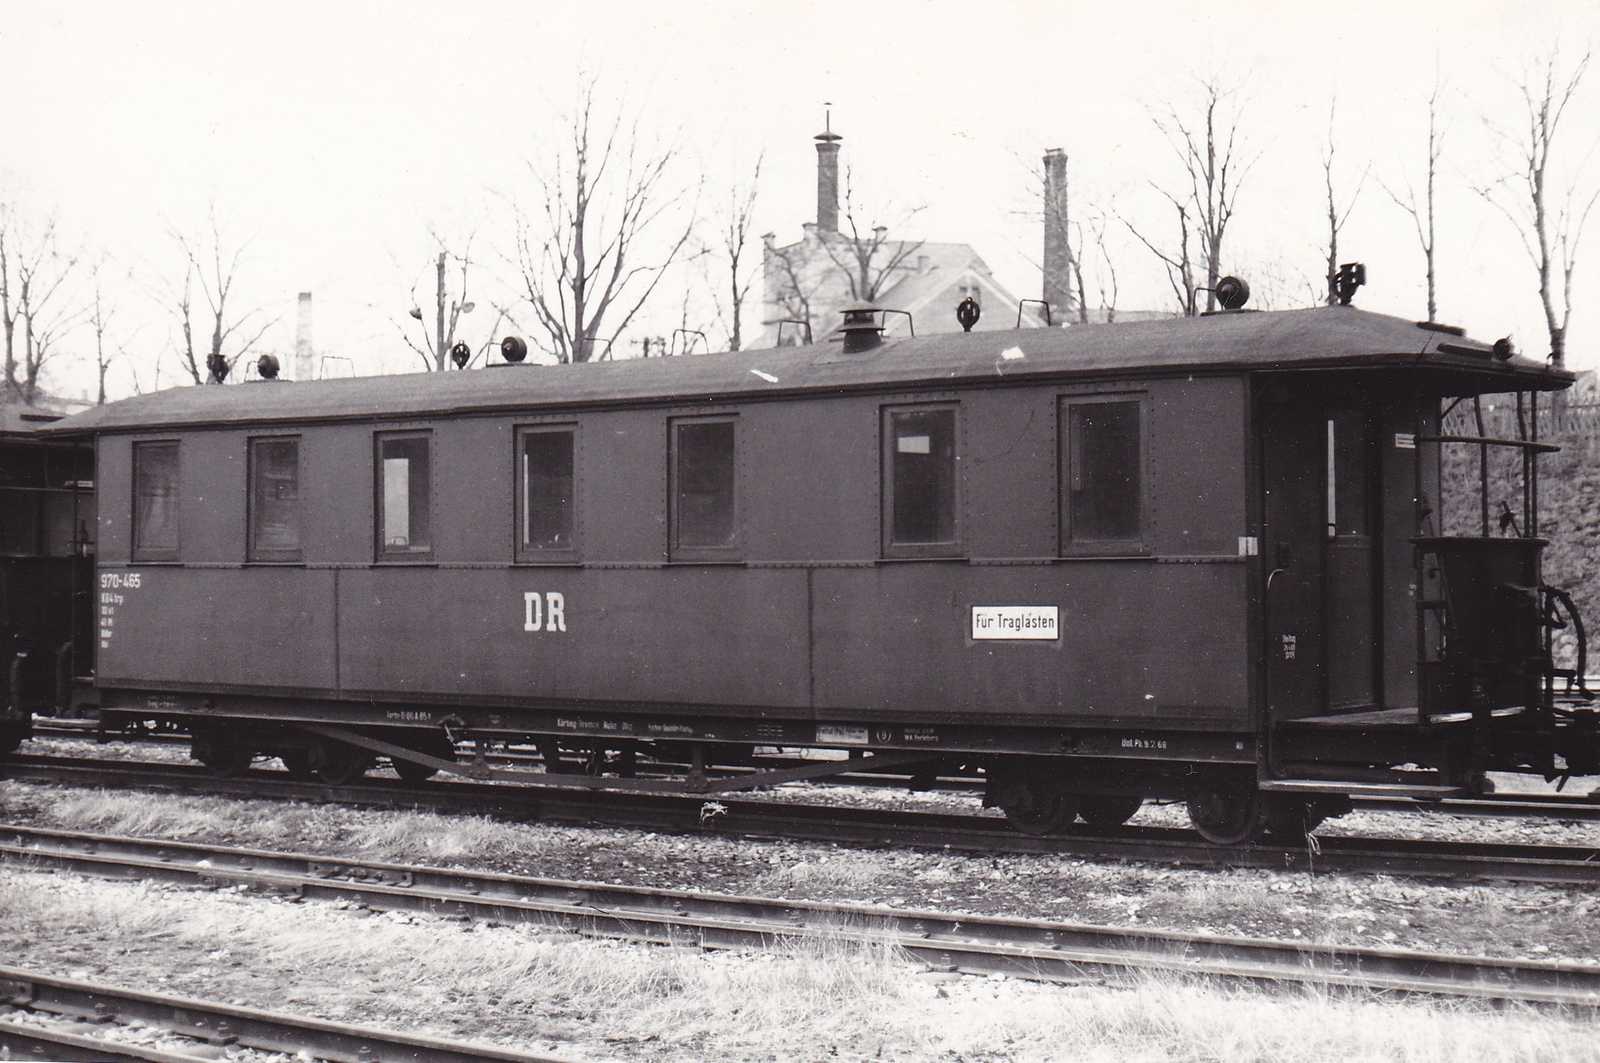 An einem nicht bekannten Ort steht der Traglasten-Personenwagen 970-465, aus dessen Rahmen 23 Jahre später der Aussichtswagen der Preßnitztalbahn entstehen sollte.